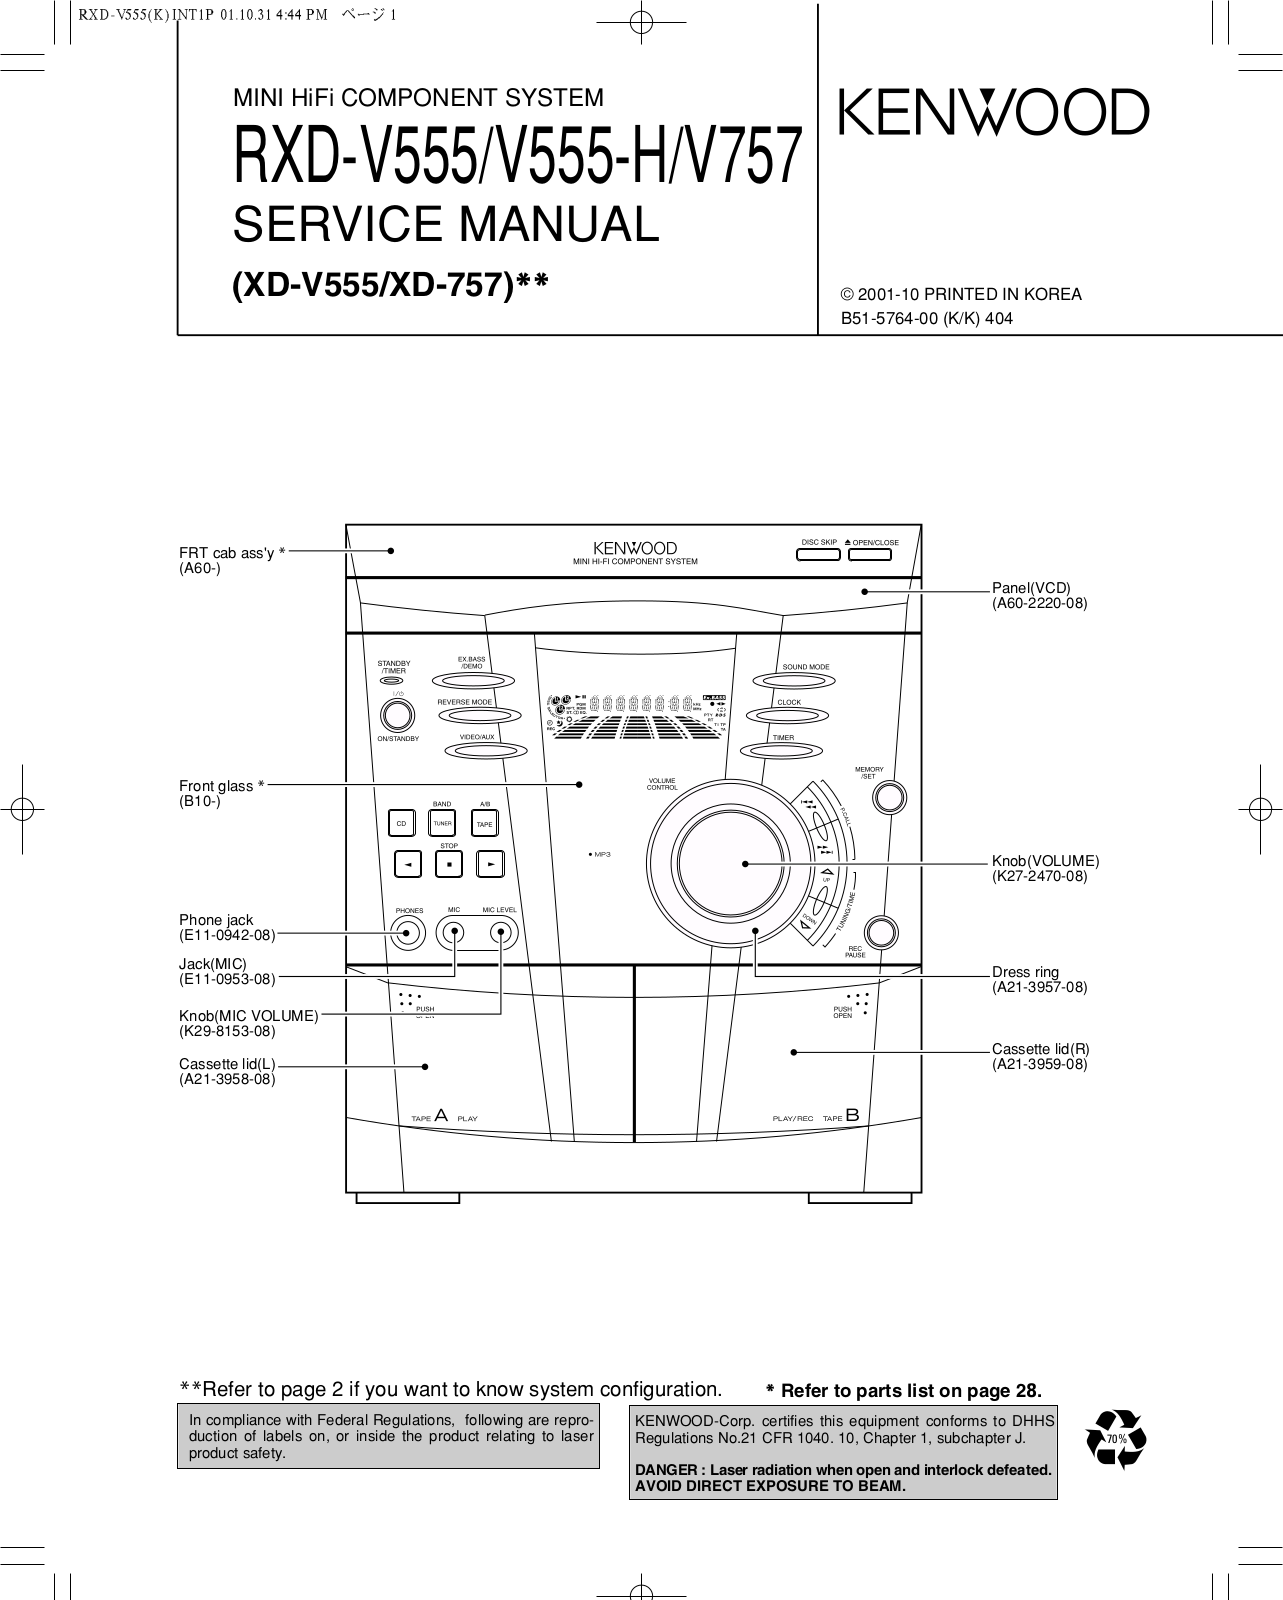 Kenwood RXD-V757, RXD-V555, RXD-V555-H User Manual